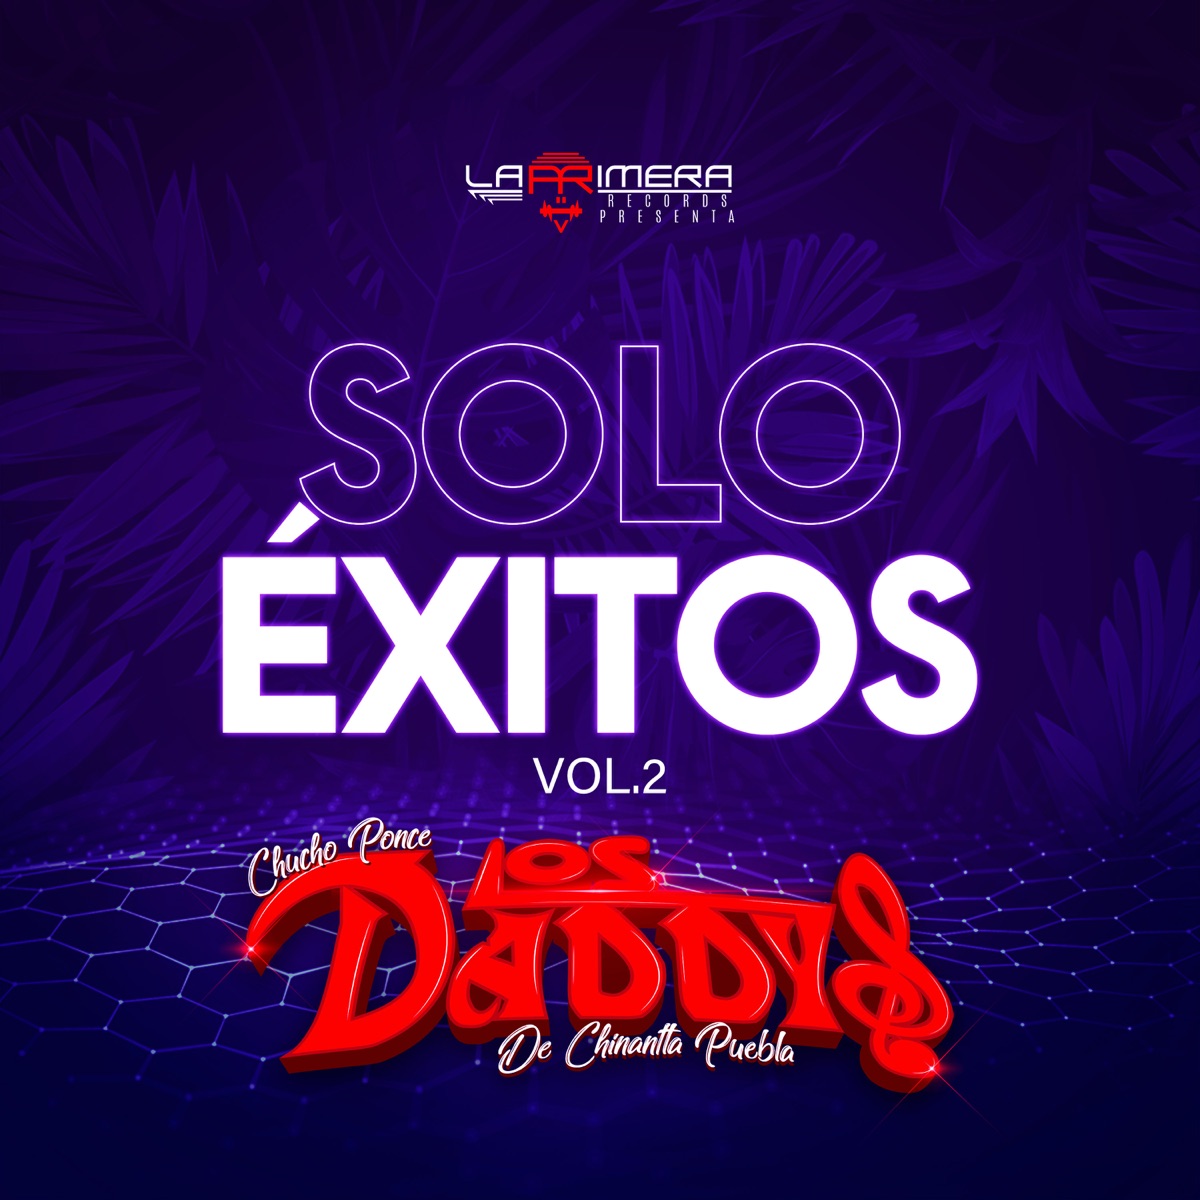 Solo Éxitos Vol. 2 by Chucho Ponce Los Daddys de Chinantla on Apple Music